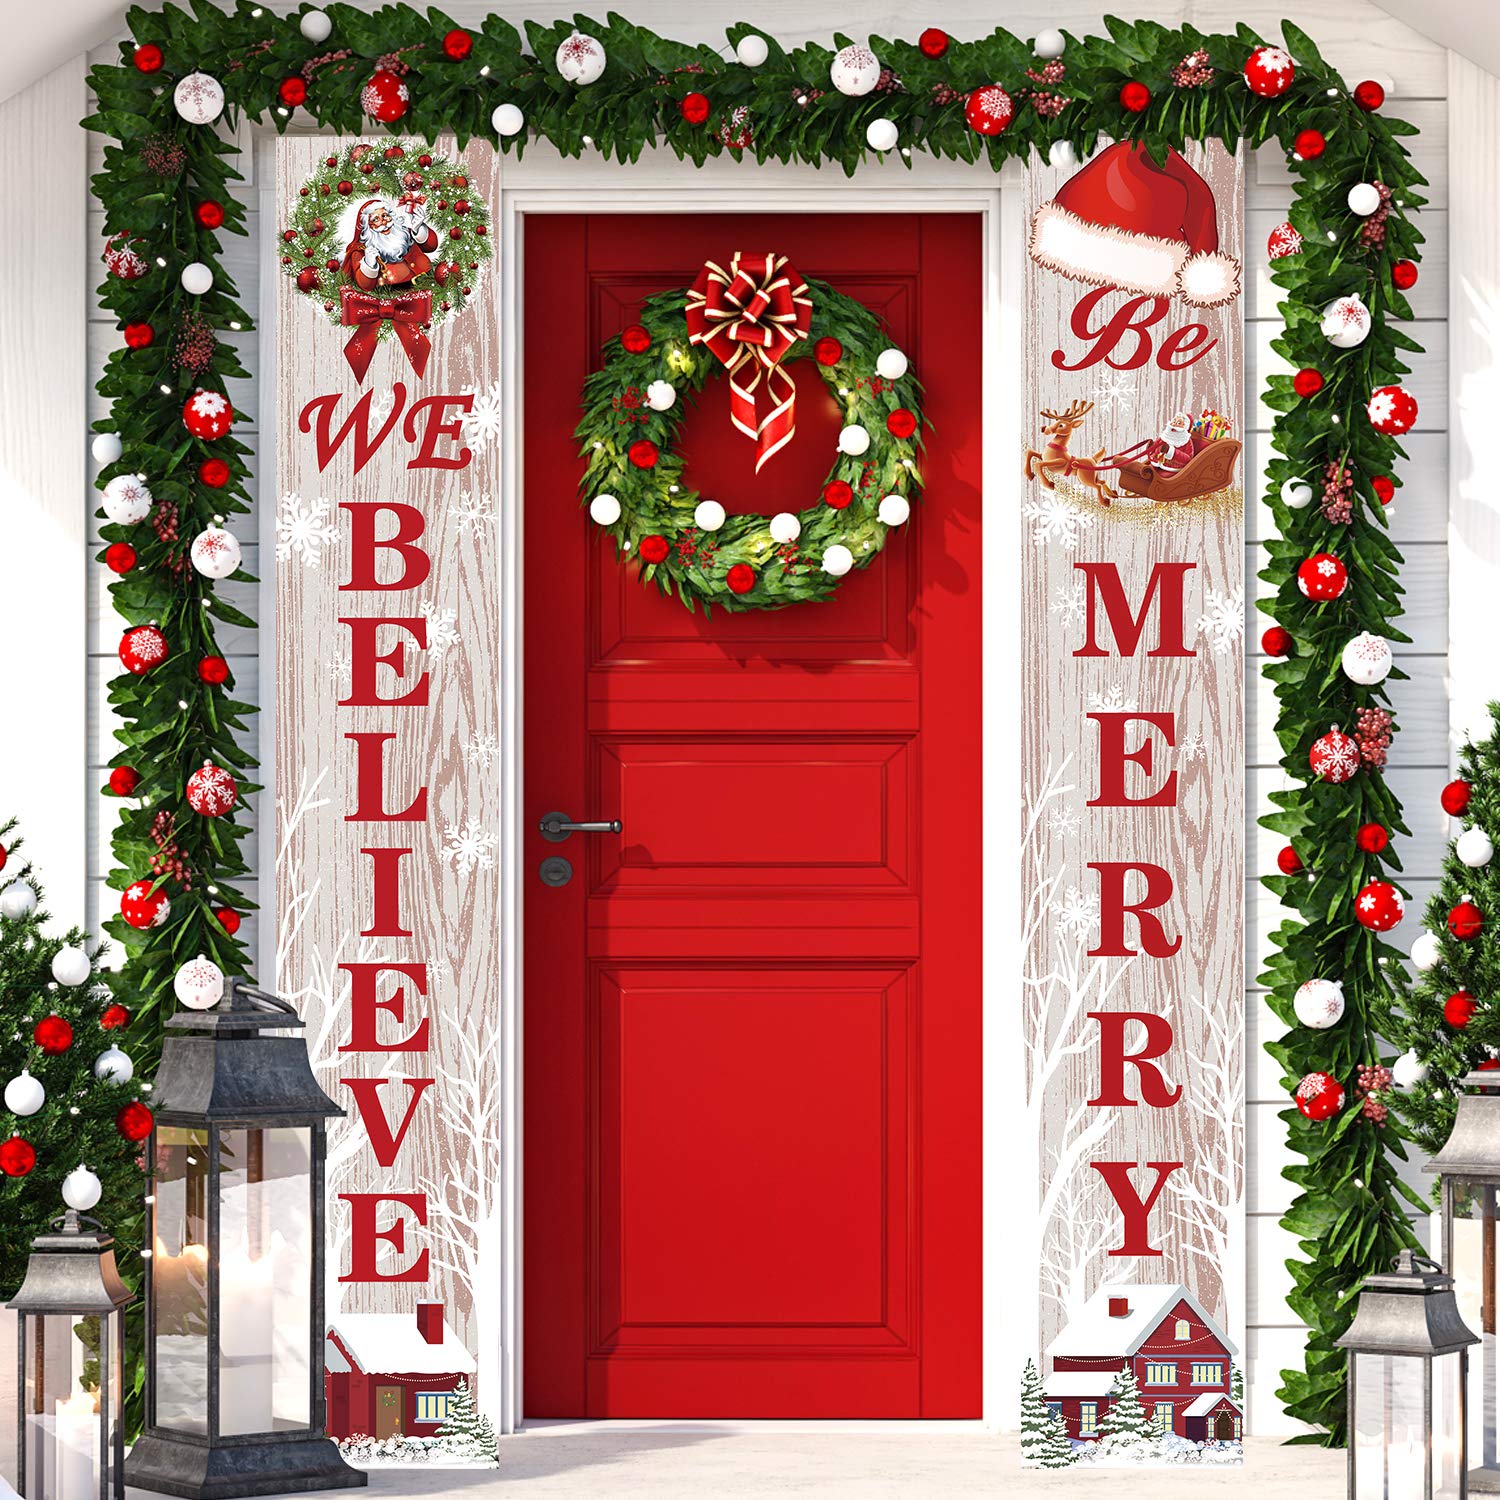 Porch Banners treo hai bên cửa ra vào với nội dung chào đón Giáng sinh “We believe” và “Be merry”